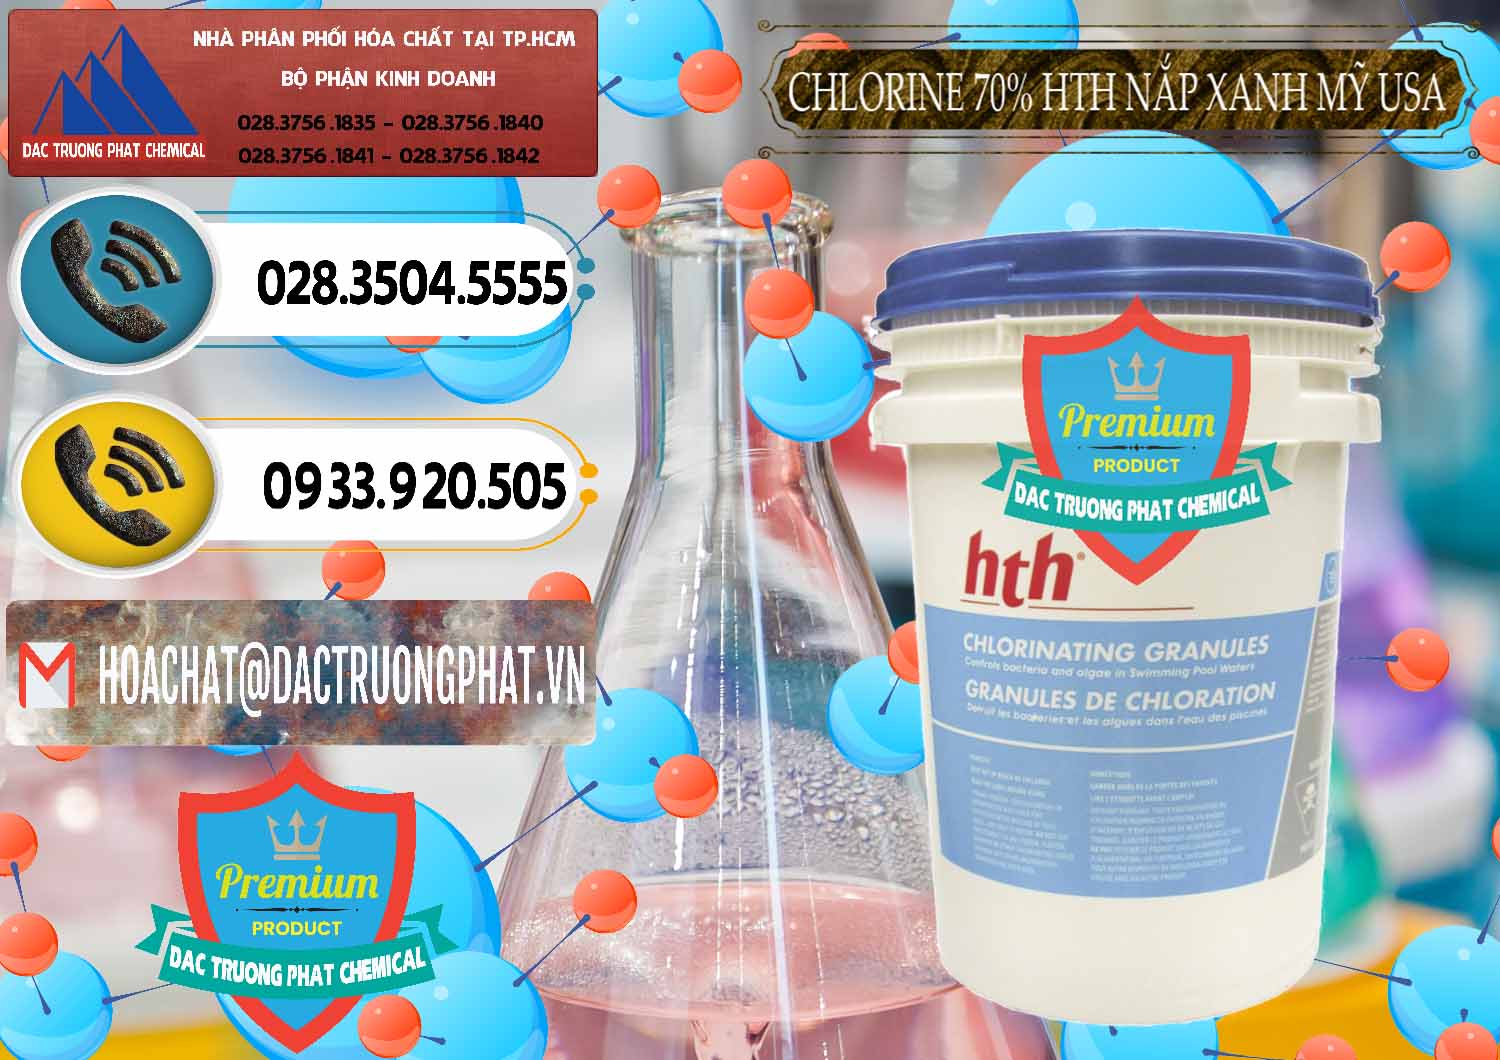 Nơi chuyên bán ( phân phối ) Clorin – Chlorine 70% HTH Nắp Xanh Mỹ Usa - 0245 - Công ty chuyên cung cấp và kinh doanh hóa chất tại TP.HCM - hoachatdetnhuom.vn